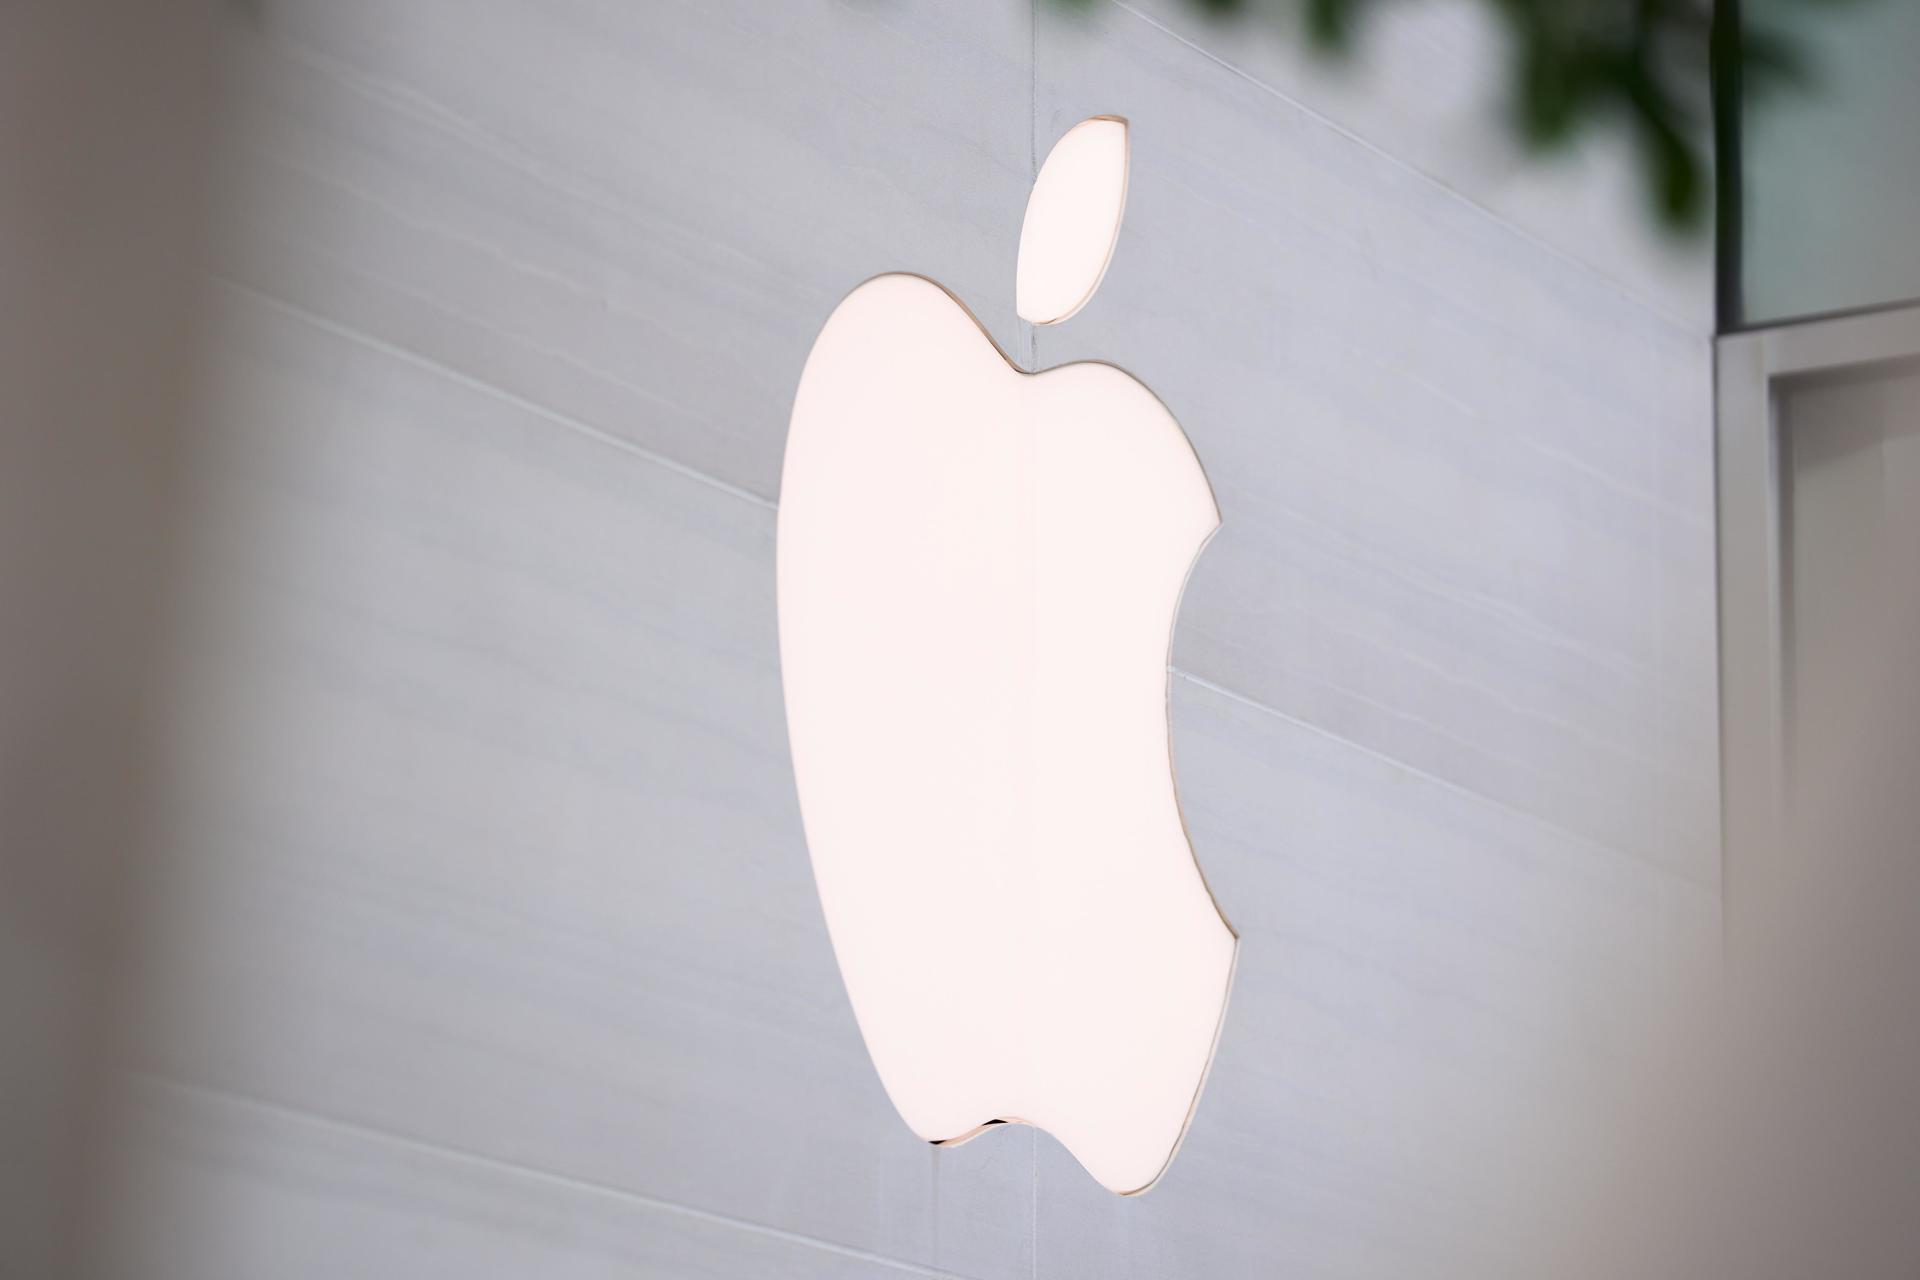 Fotografía de archivo del logo de Apple. EFE/EPA/ALLISON DINNER